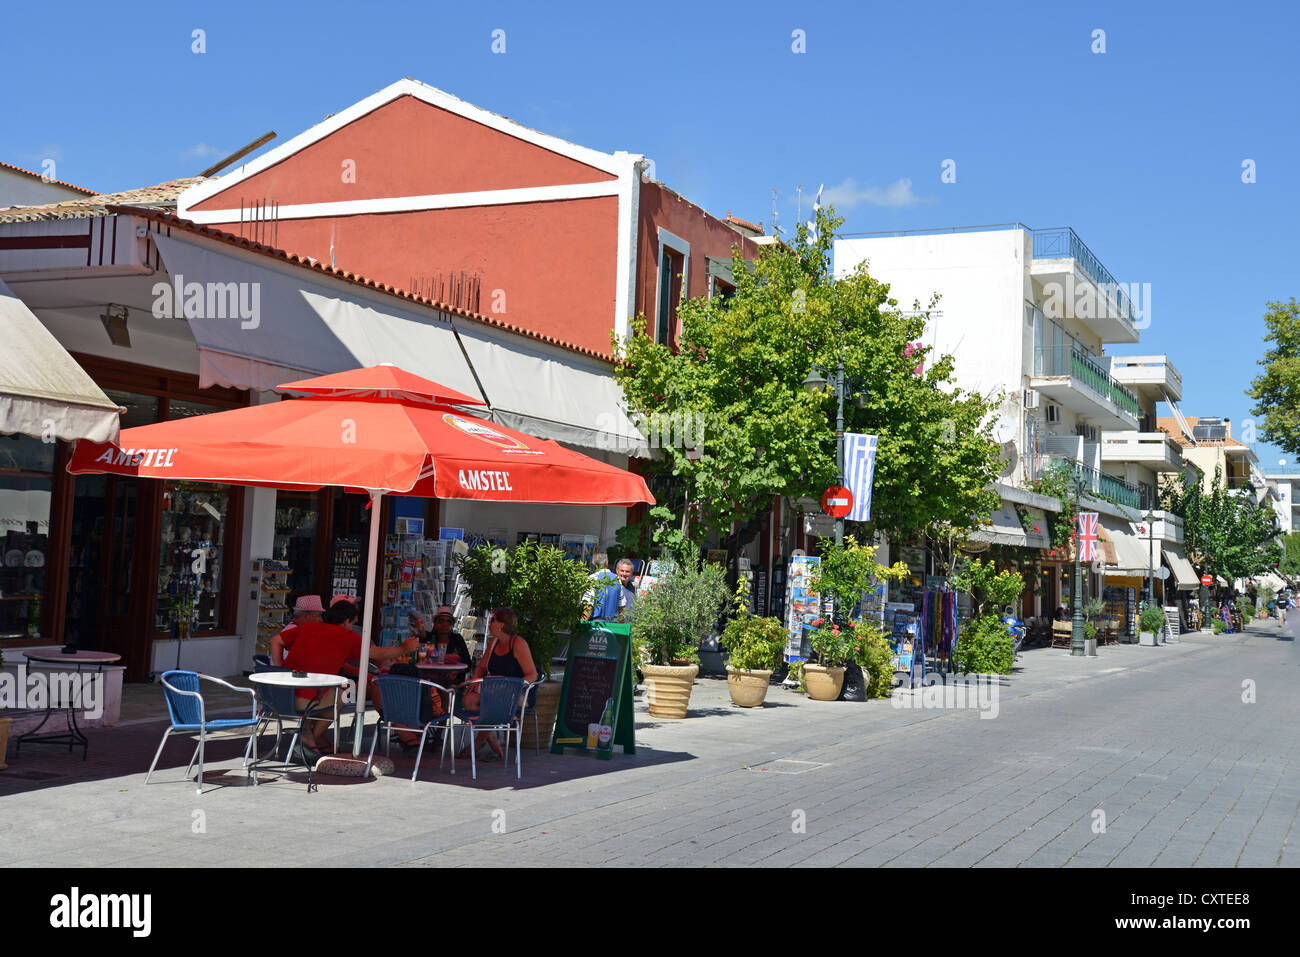 Main street, Olympia, Elis, ouest de la Grèce, Grèce Région Banque D'Images